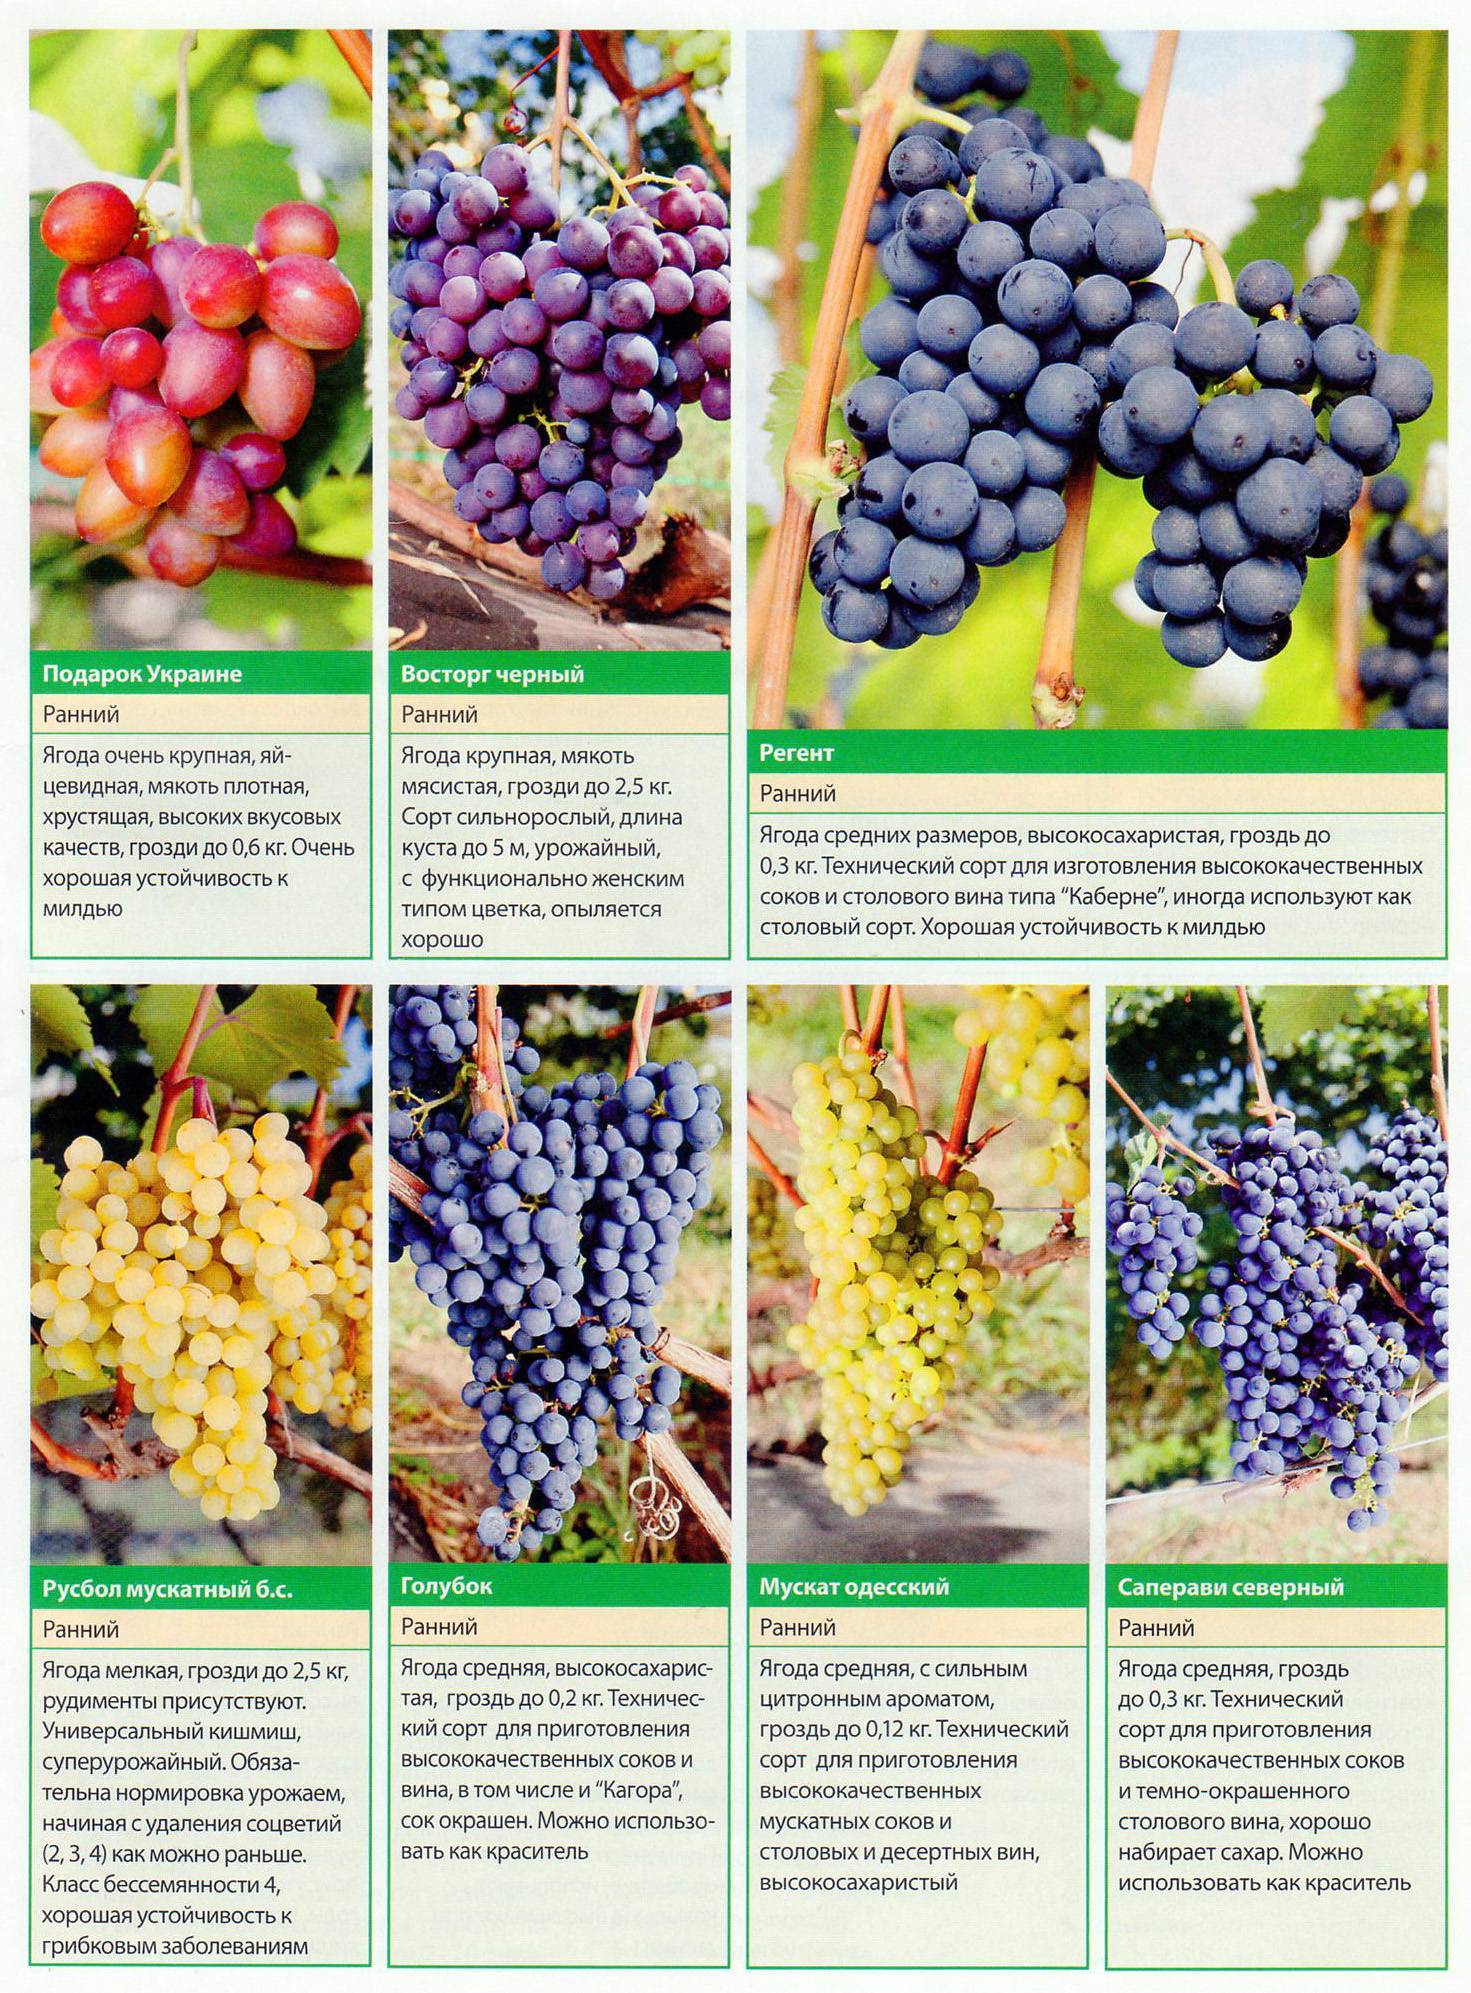 Виноград агат донской: как вырастить хороший урожай